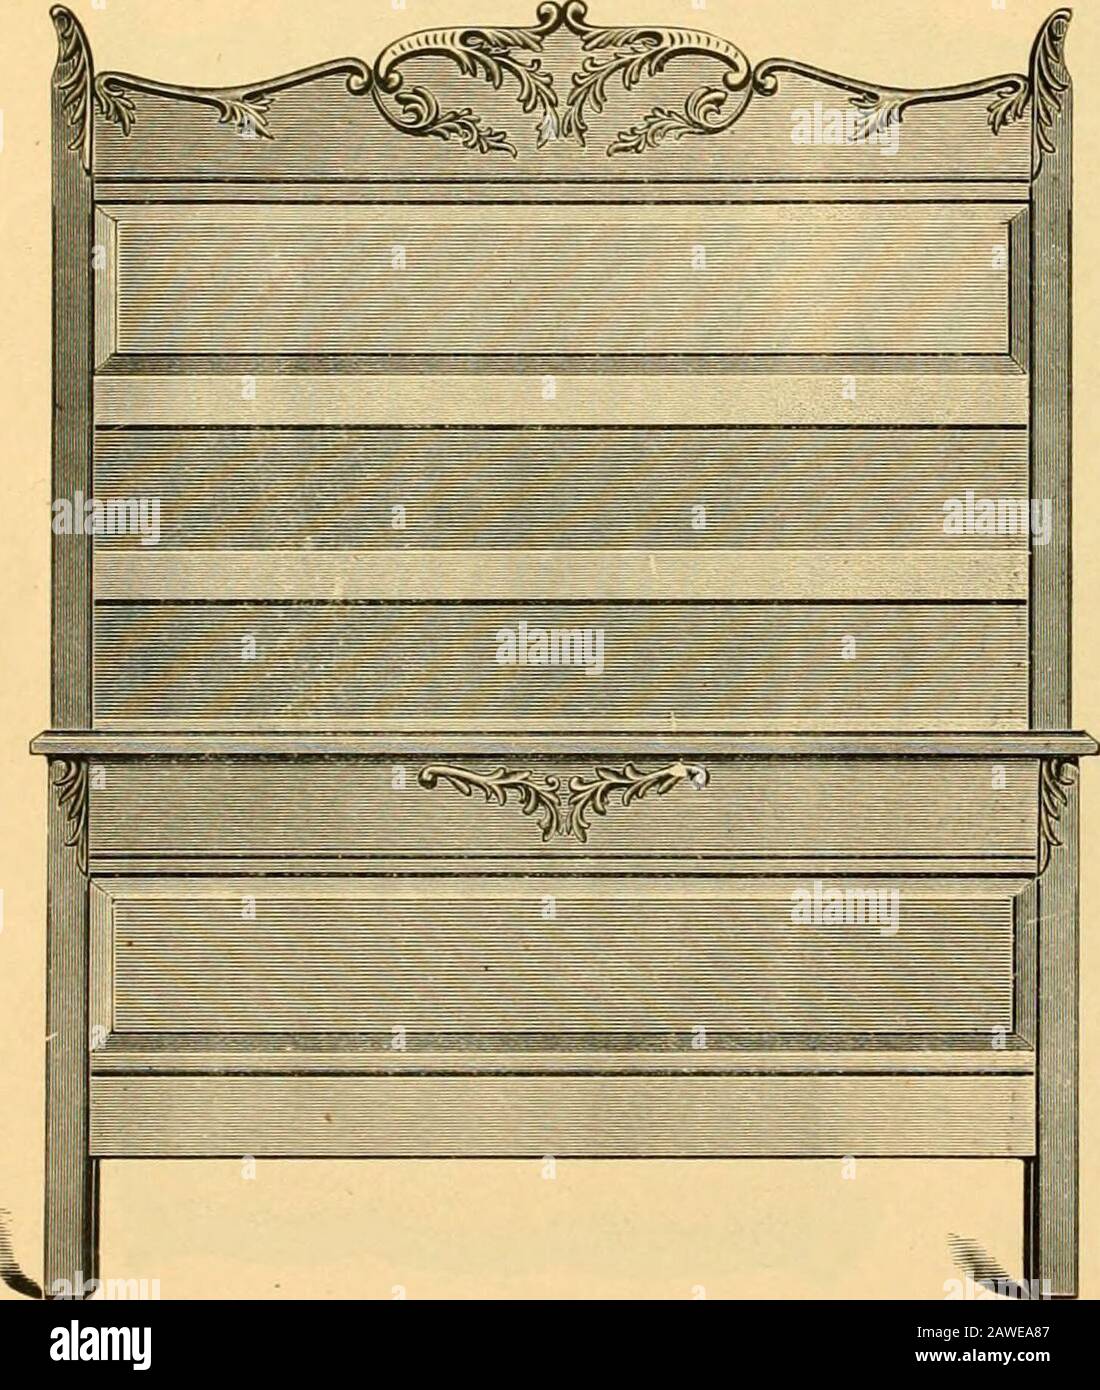 Catalogue L C Wlcron Co No 981 Open Top Dresser Pattern